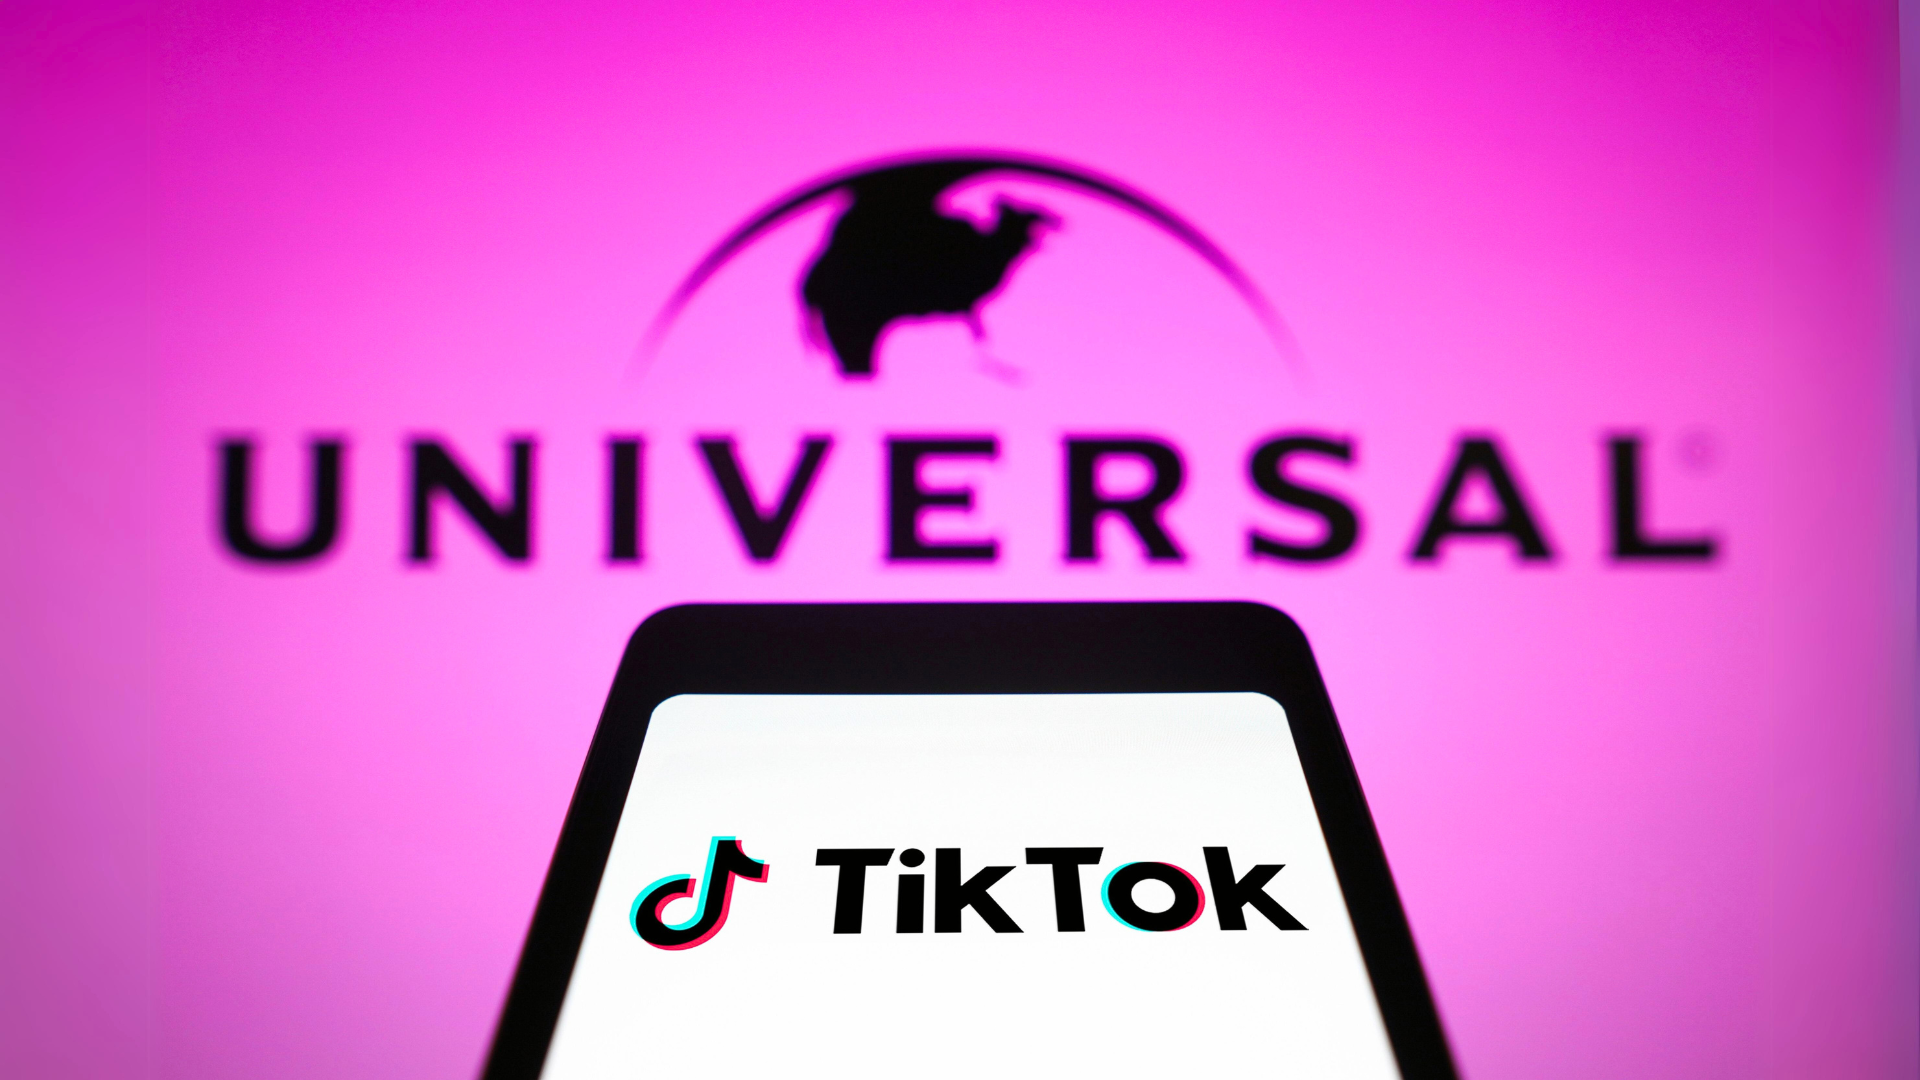 TikTok ameaça remover até 80% das "músicas populares" por disputa com Universal Music